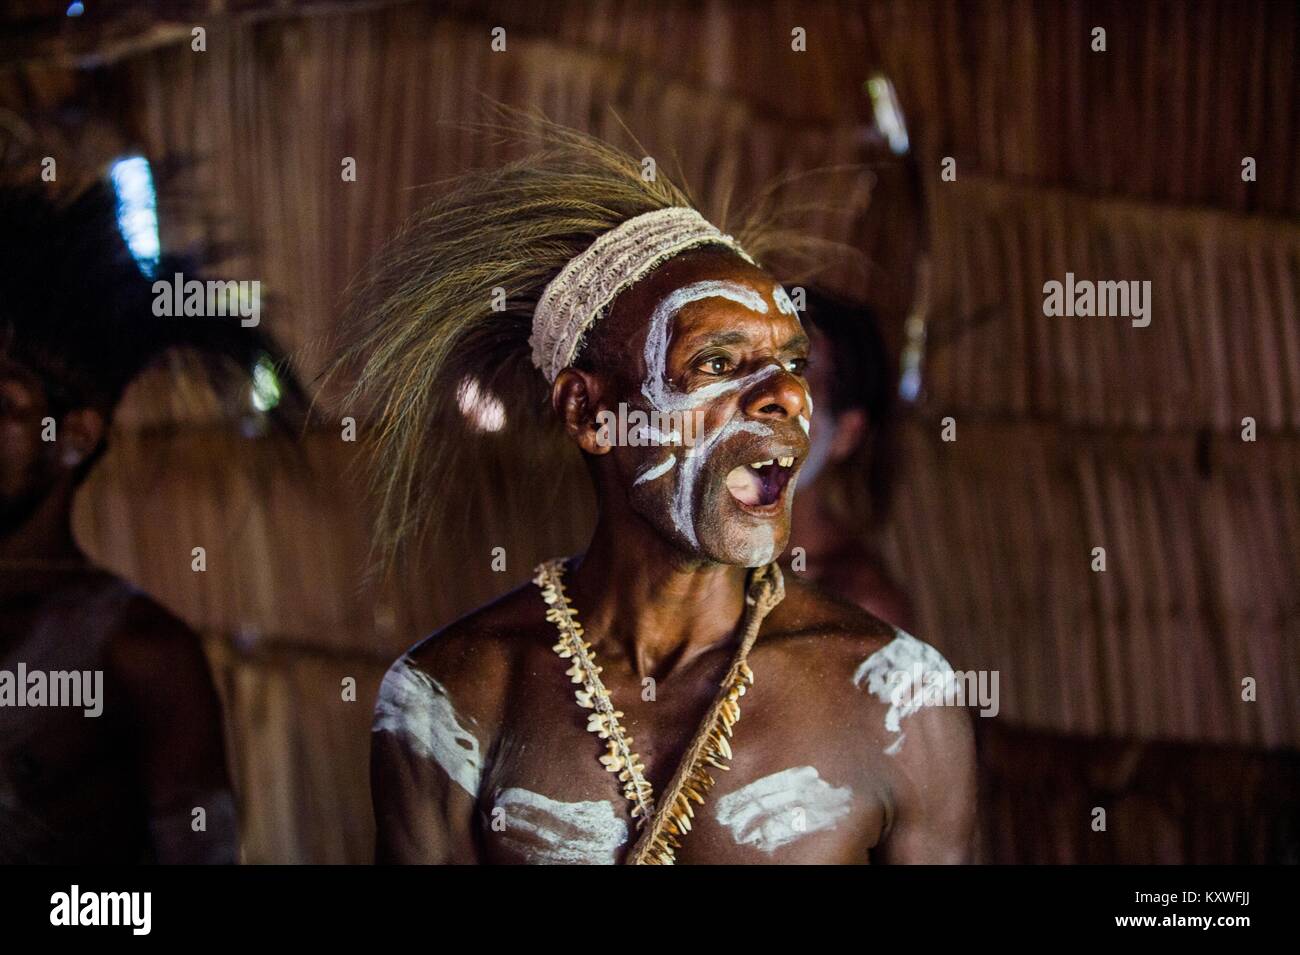 Portrait d'un homme de la tribu de peuple Asmat dans le rituel du maquillage. Nouvelle Guinée. 23 mai, 2016 Banque D'Images